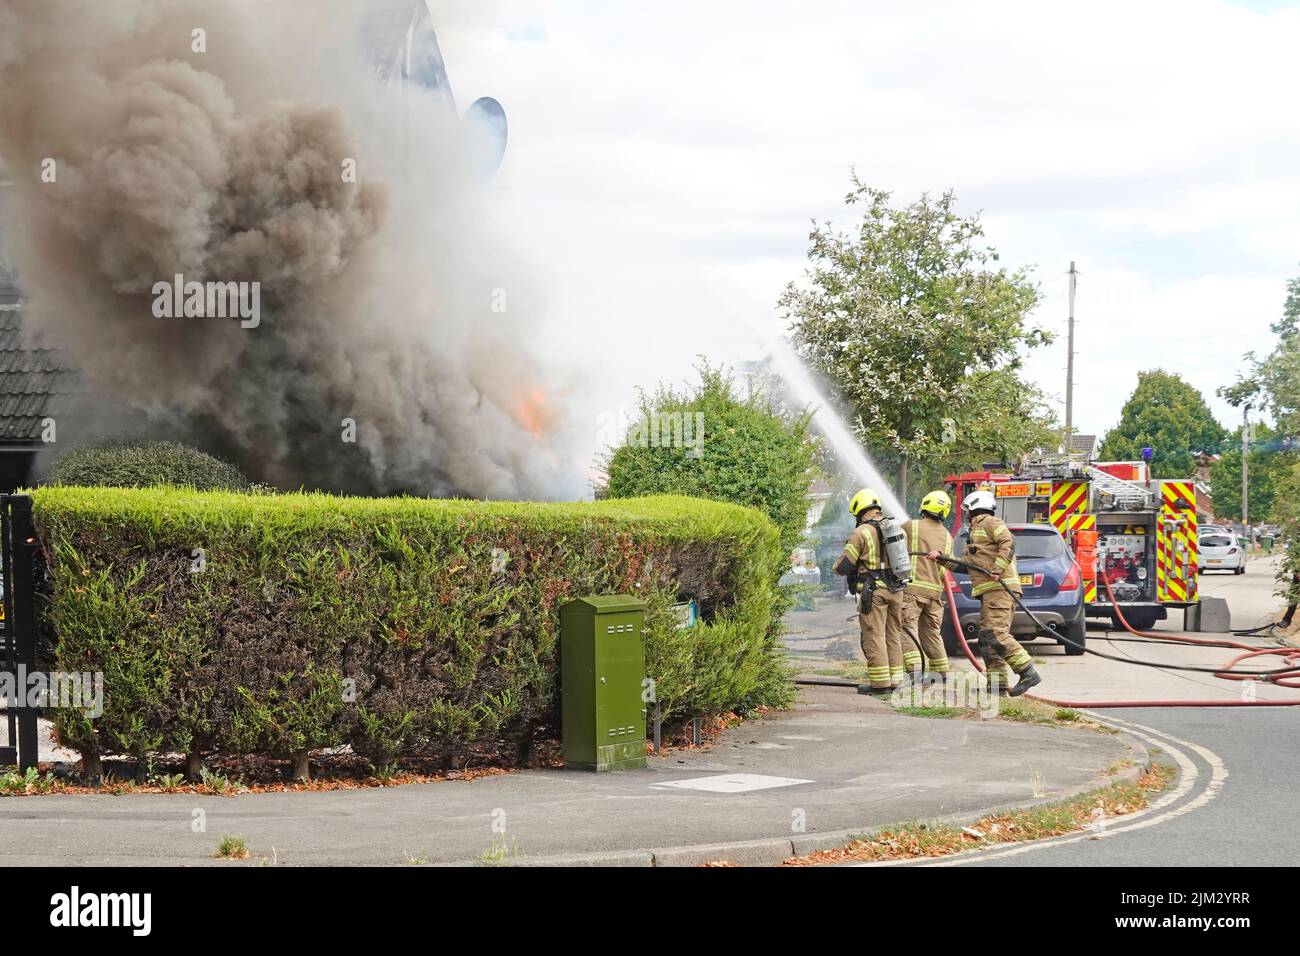 En tant que groupe de pompiers, la fumée et les flammes s'enflamment au jet d'eau sur les murs avant et latéraux de la maison Essex Fire & Rescue Tender Rescue Road résidentielle Essex England Royaume-Uni Banque D'Images